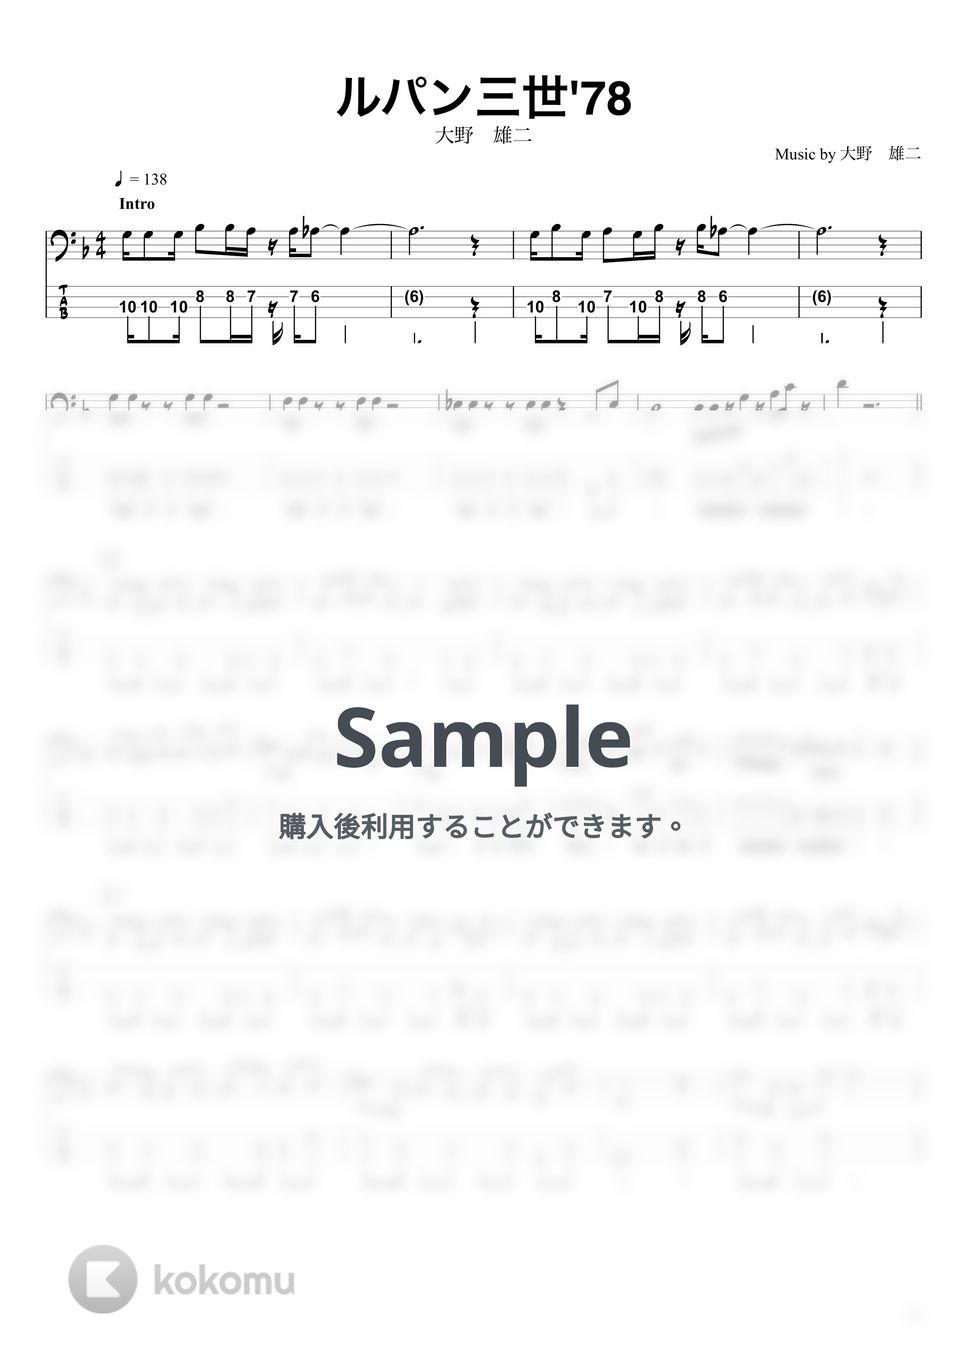 大野雄二 - ルパン三世 ’78 (ベースTAB譜☆4弦ベース対応) by swbass